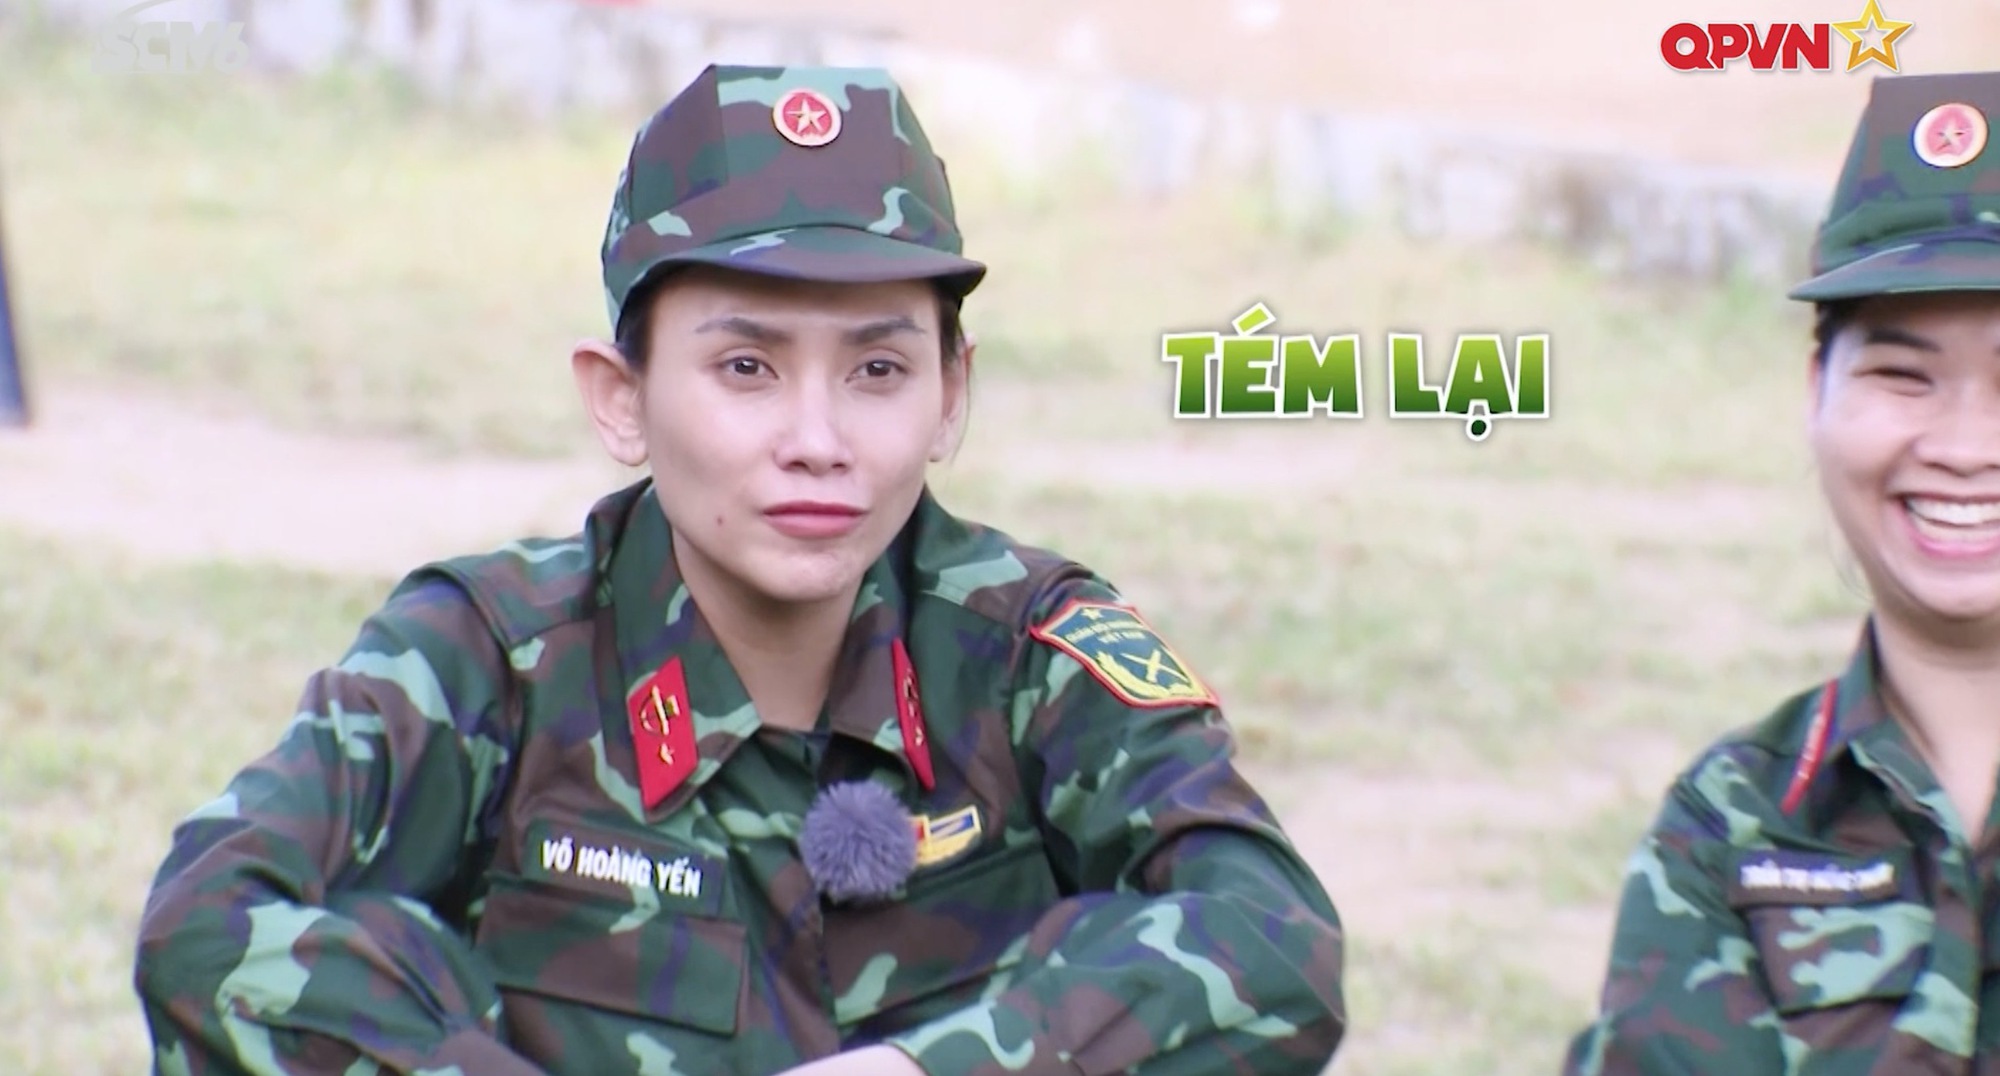 Trang Hý thông báo tình trạng hôn nhân bế tắc, mừng rỡ tìm được chiến sĩ hợp tuổi ở Sao Nhập Ngũ - Ảnh 5.